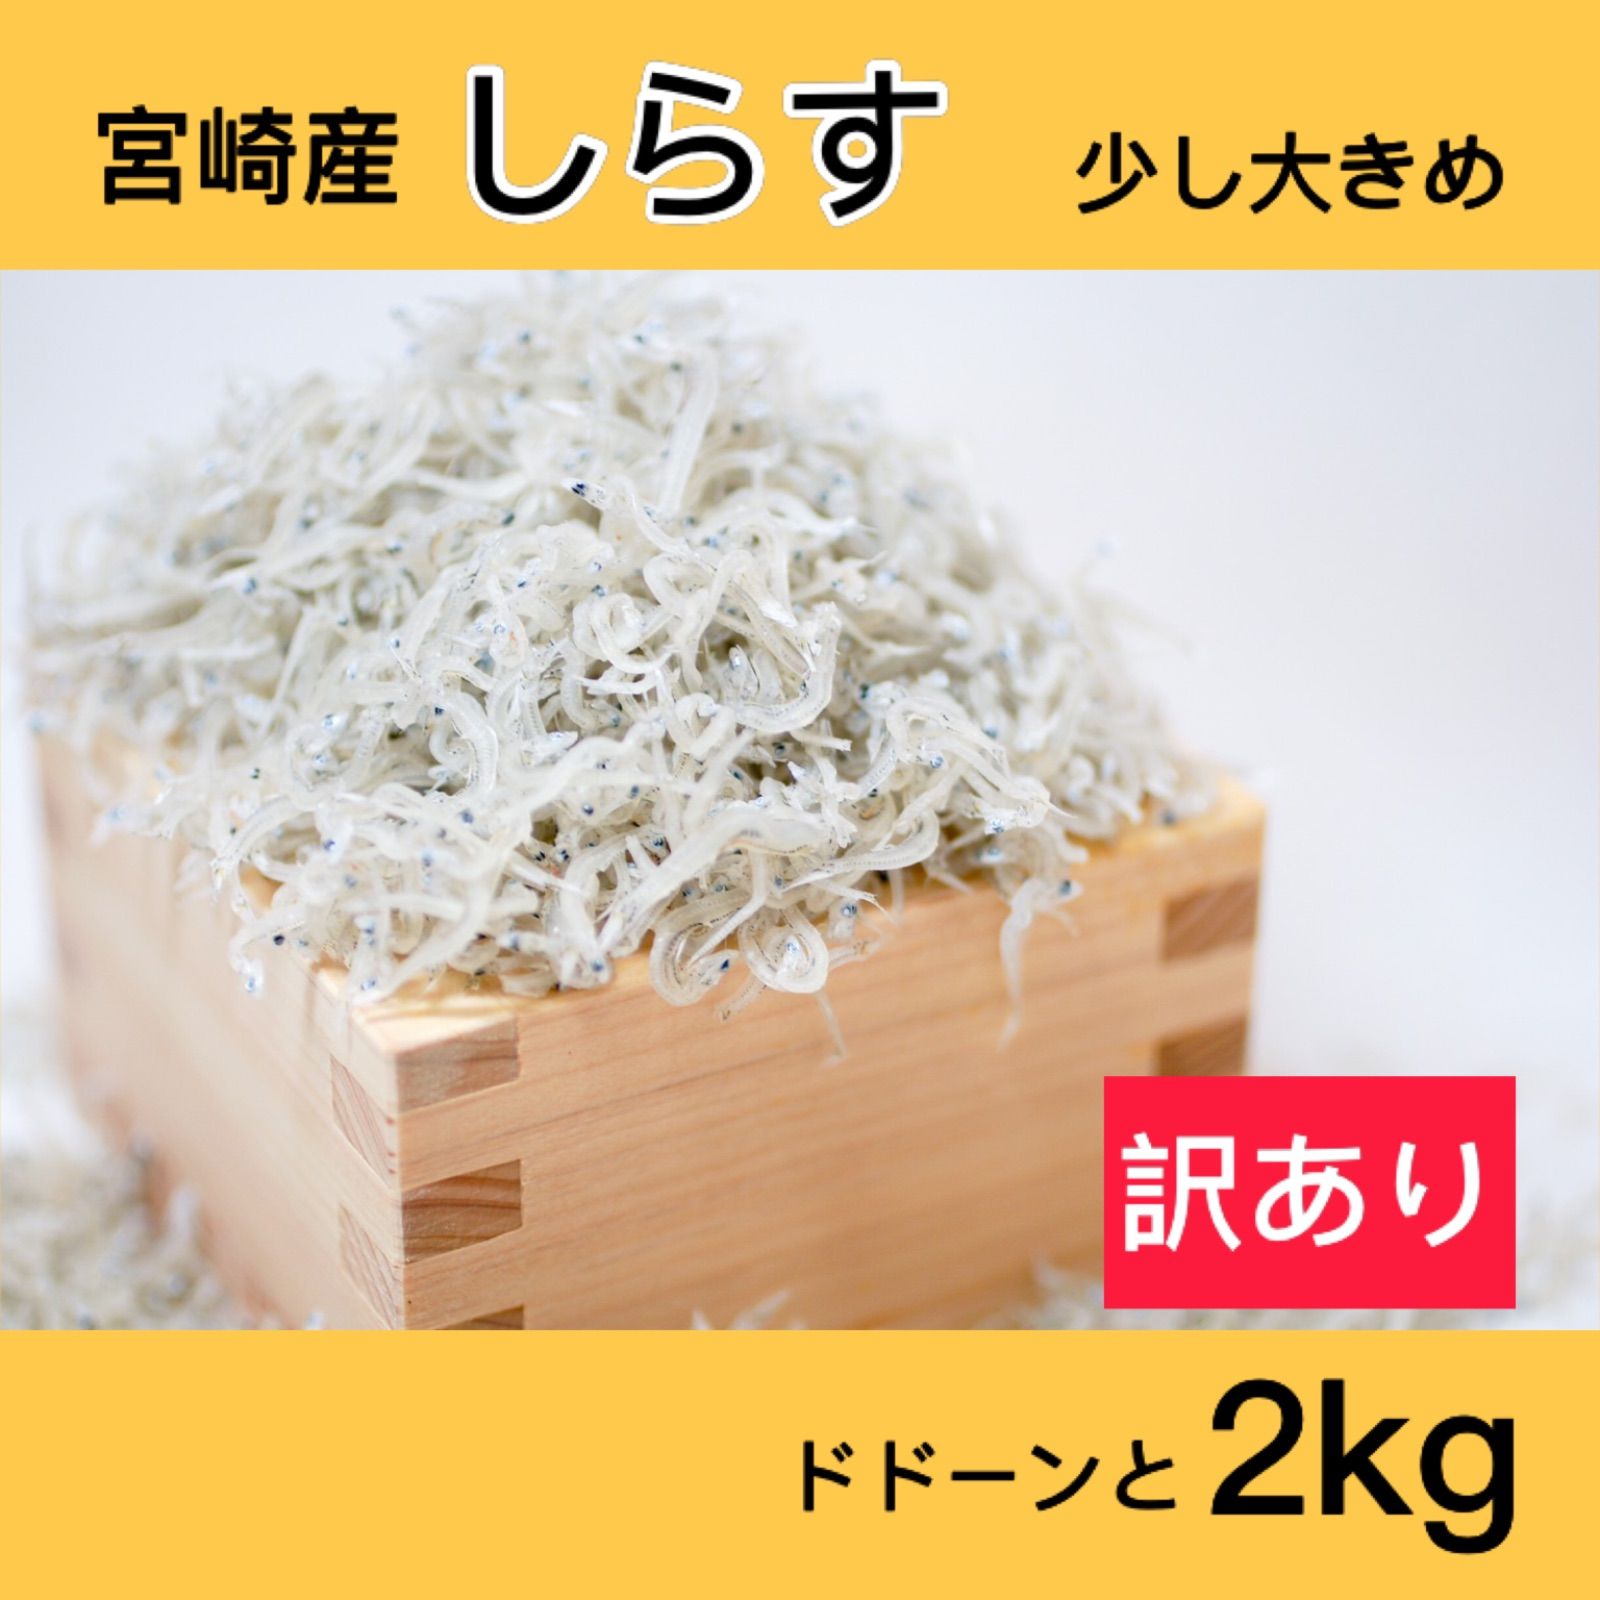 訳あり しらす 2kg 新物 メガ盛り 宮崎県産 しらす丼 しらすトースト カルシウム-0